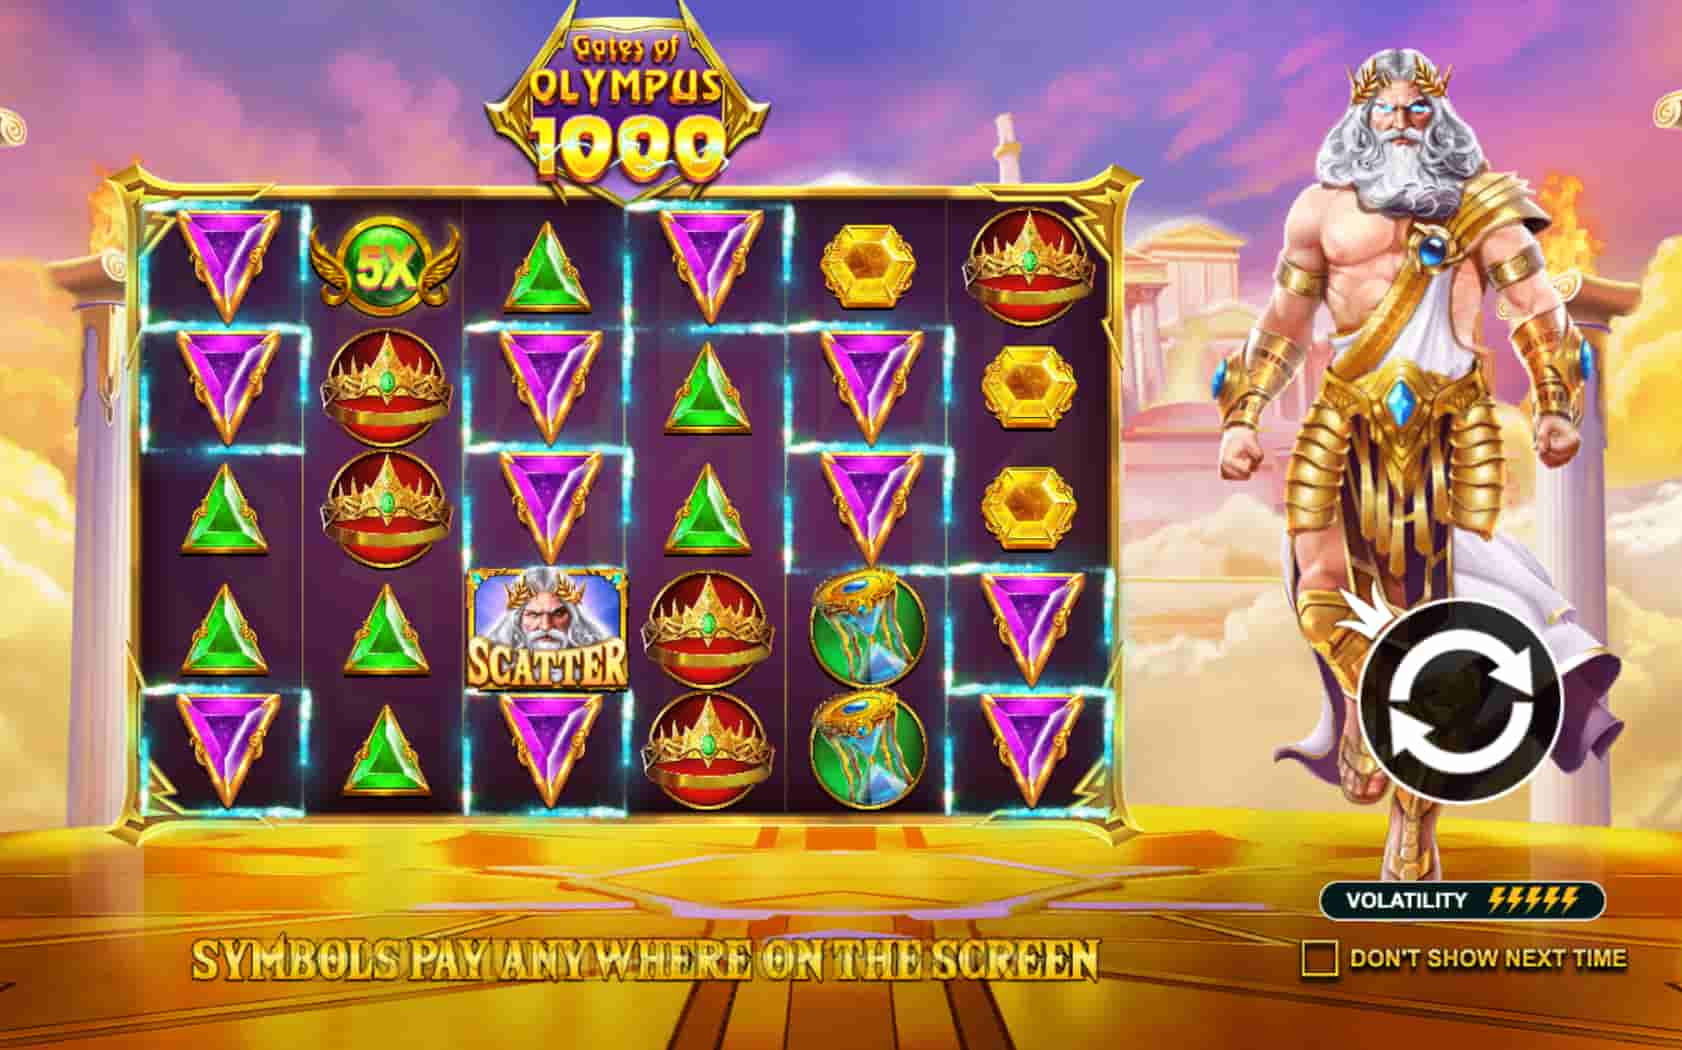 Gates of Olympus 1000 screenshot 5